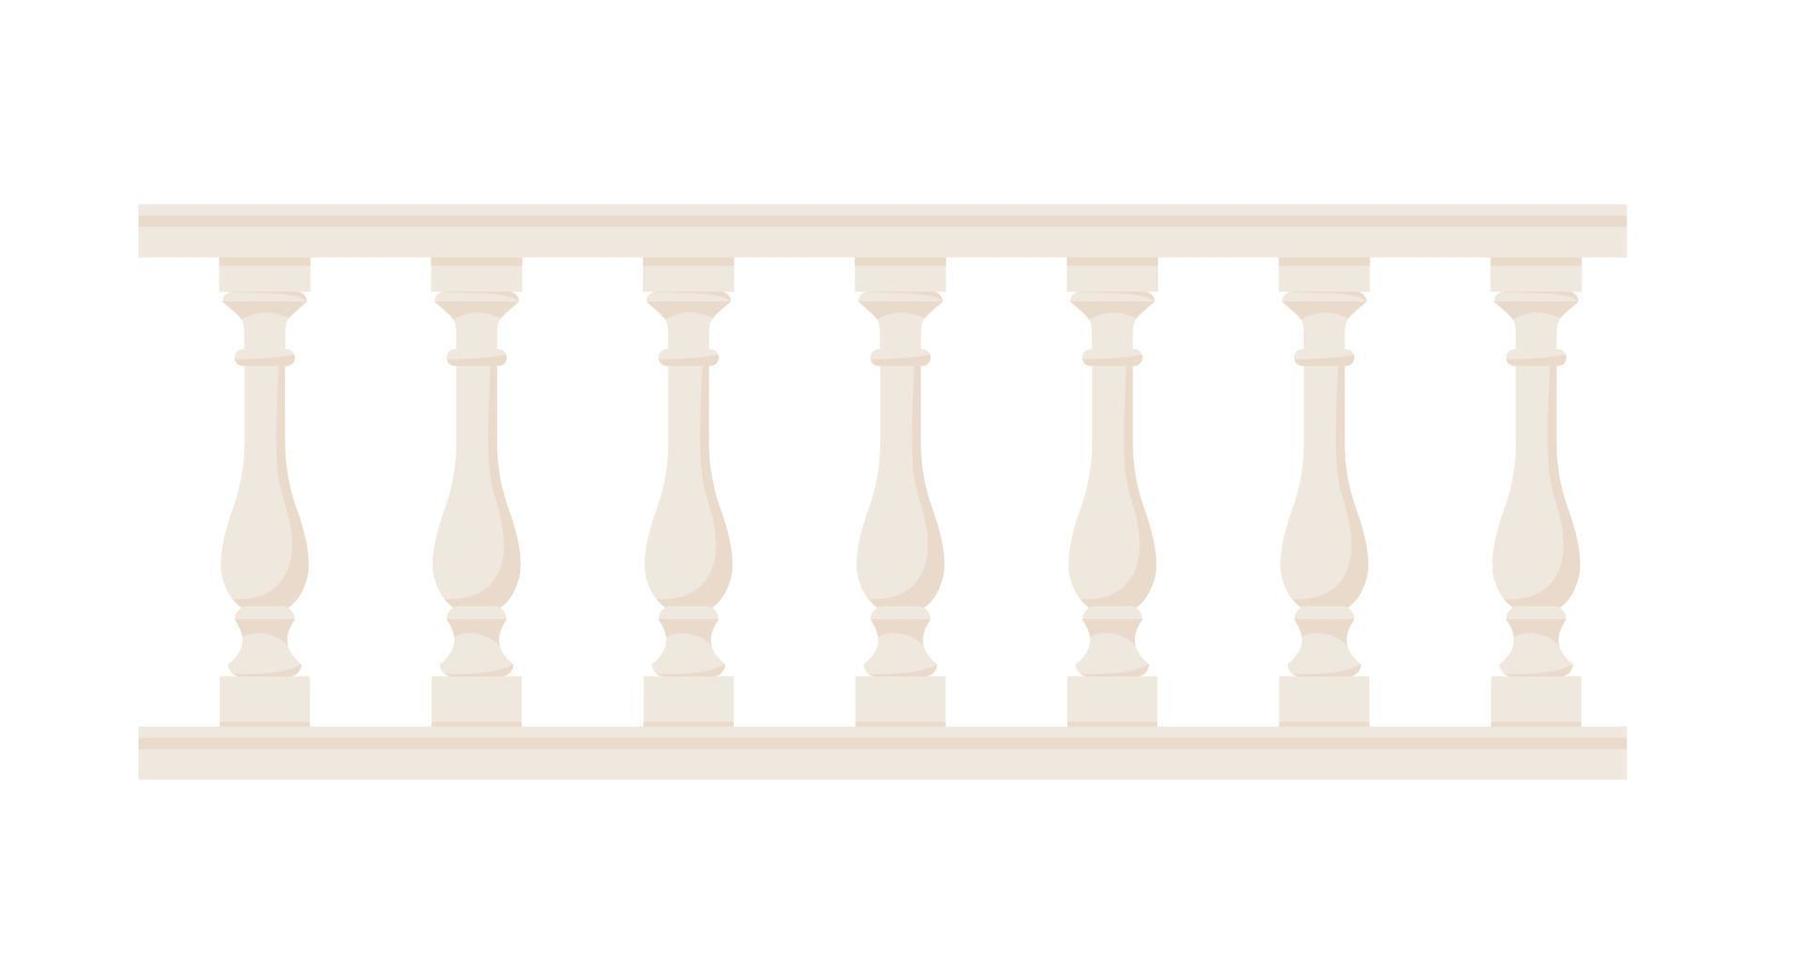 Steinbalustrade mit Balustraden für Zäune. Palastzaun. balkonhandlauf mit säulen. dekoratives Geländer. Schlossarchitekturelement. flache vektorillustration lokalisiert auf weißem hintergrund vektor